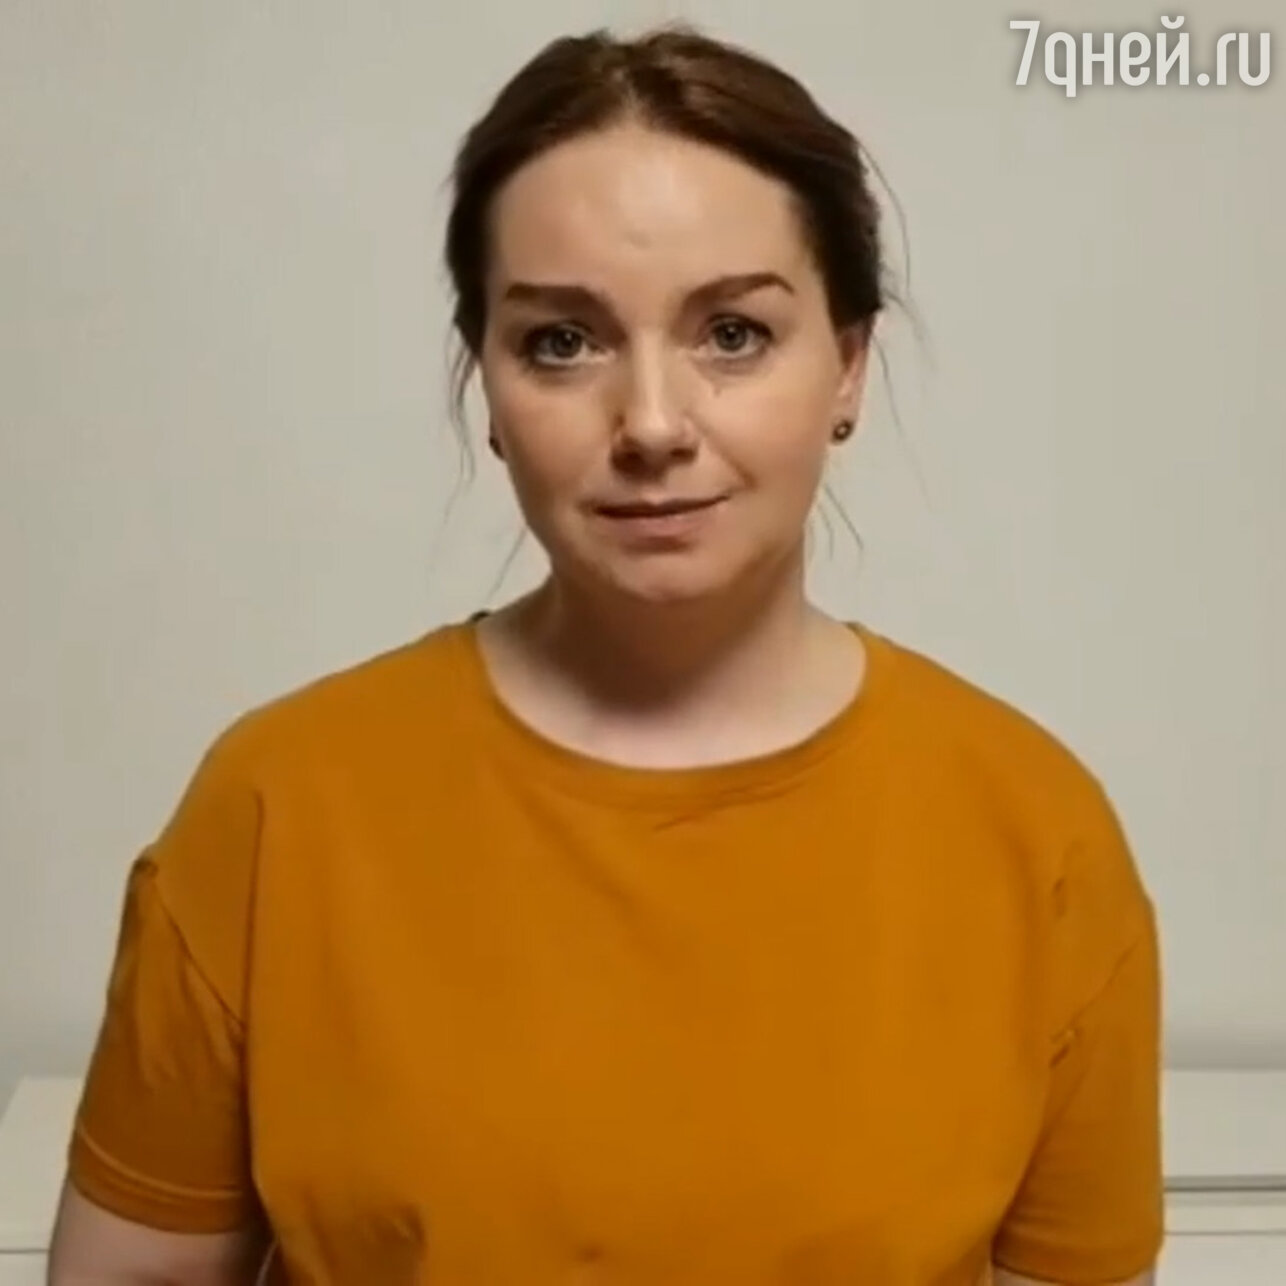 Как выглядит и что делает Будина, бросившая карьеру актрисы - 7Дней.ру